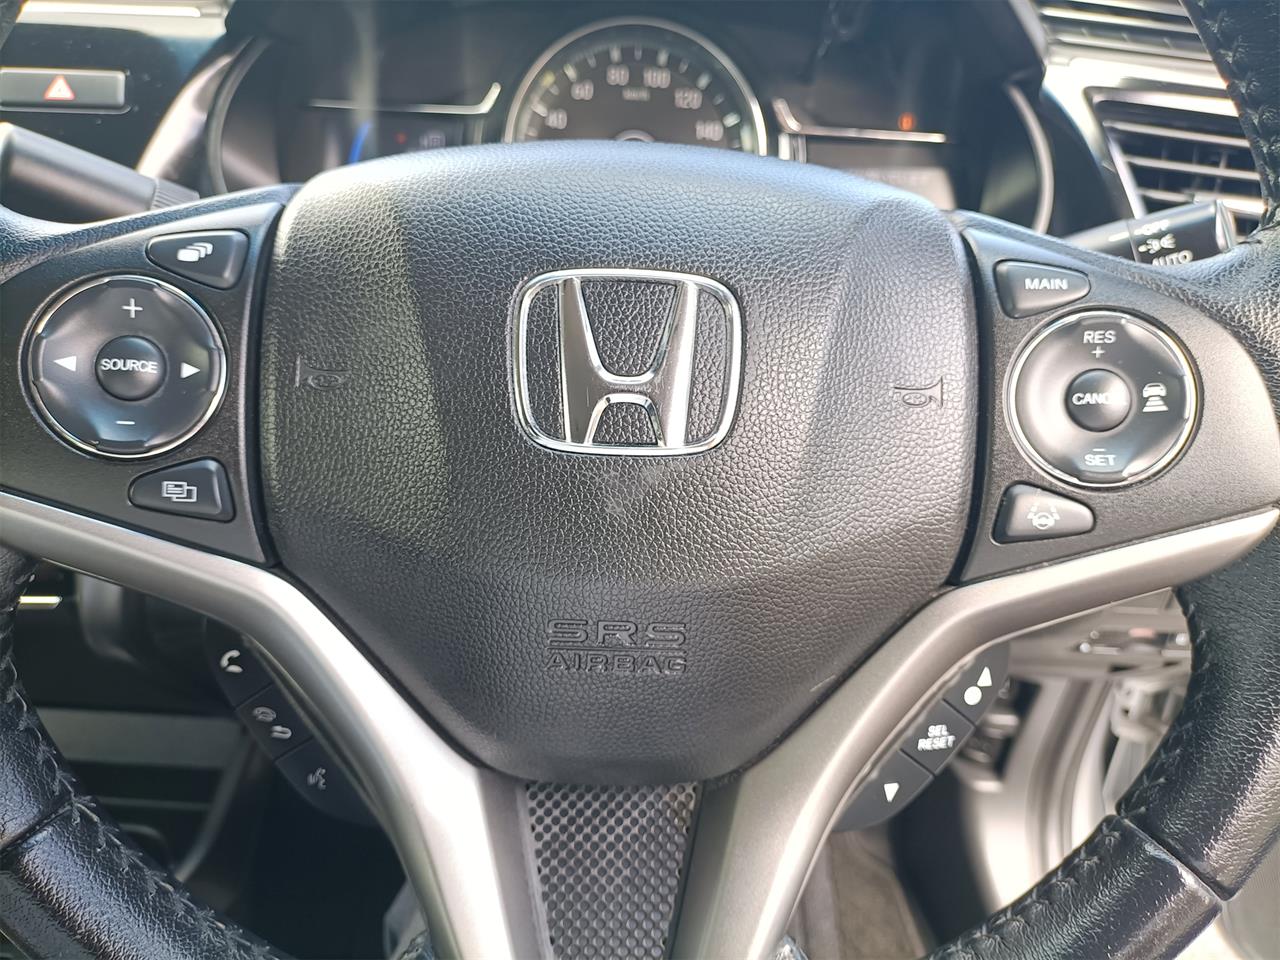 2017 Honda Grace